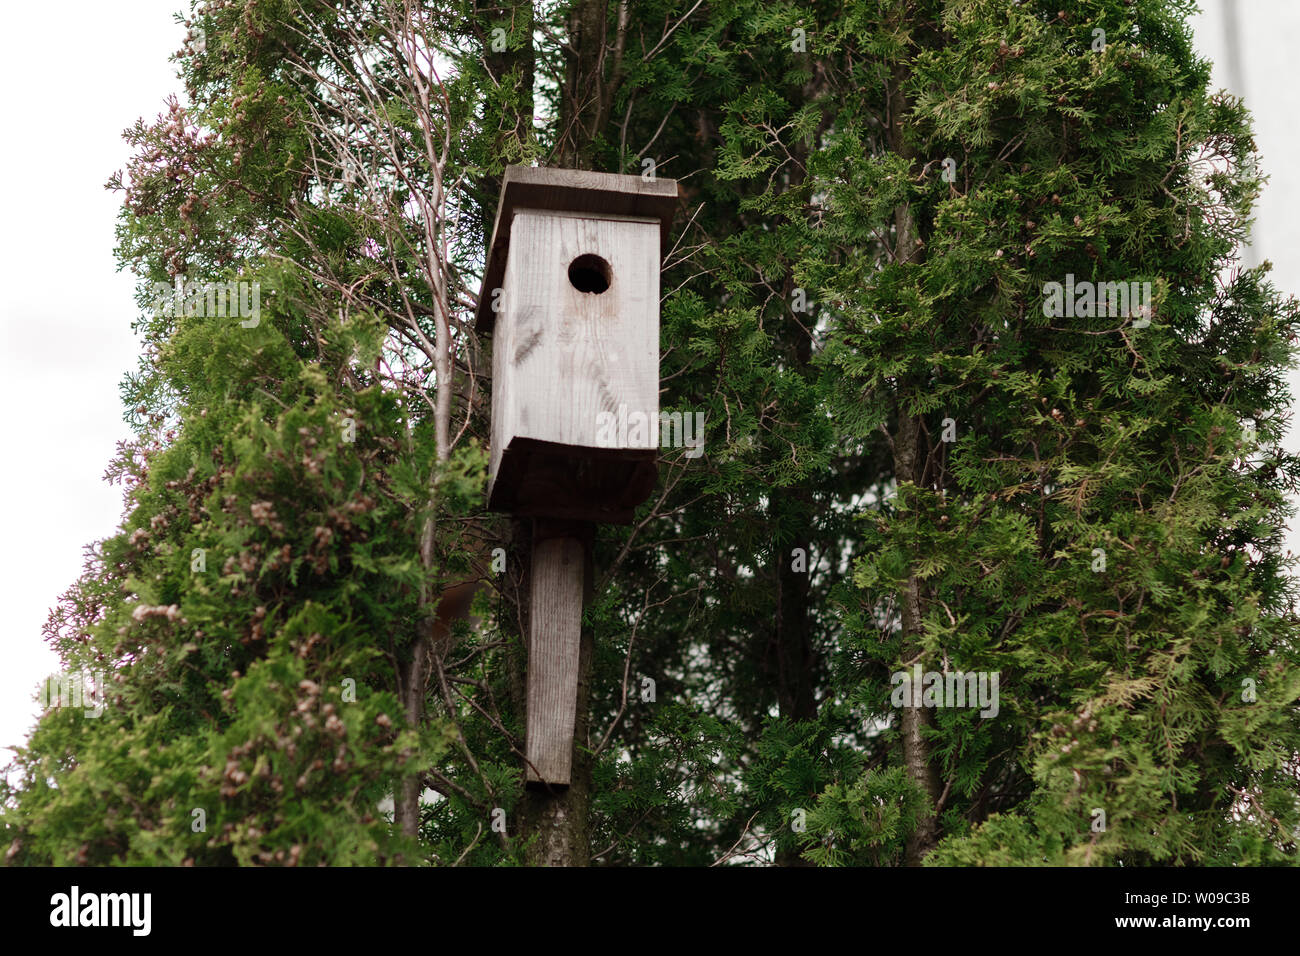 Baumhaus für Vögel auf dem Baum, Vogelhaus aus dem Baum für überwinternde  Vögel Stockfotografie - Alamy